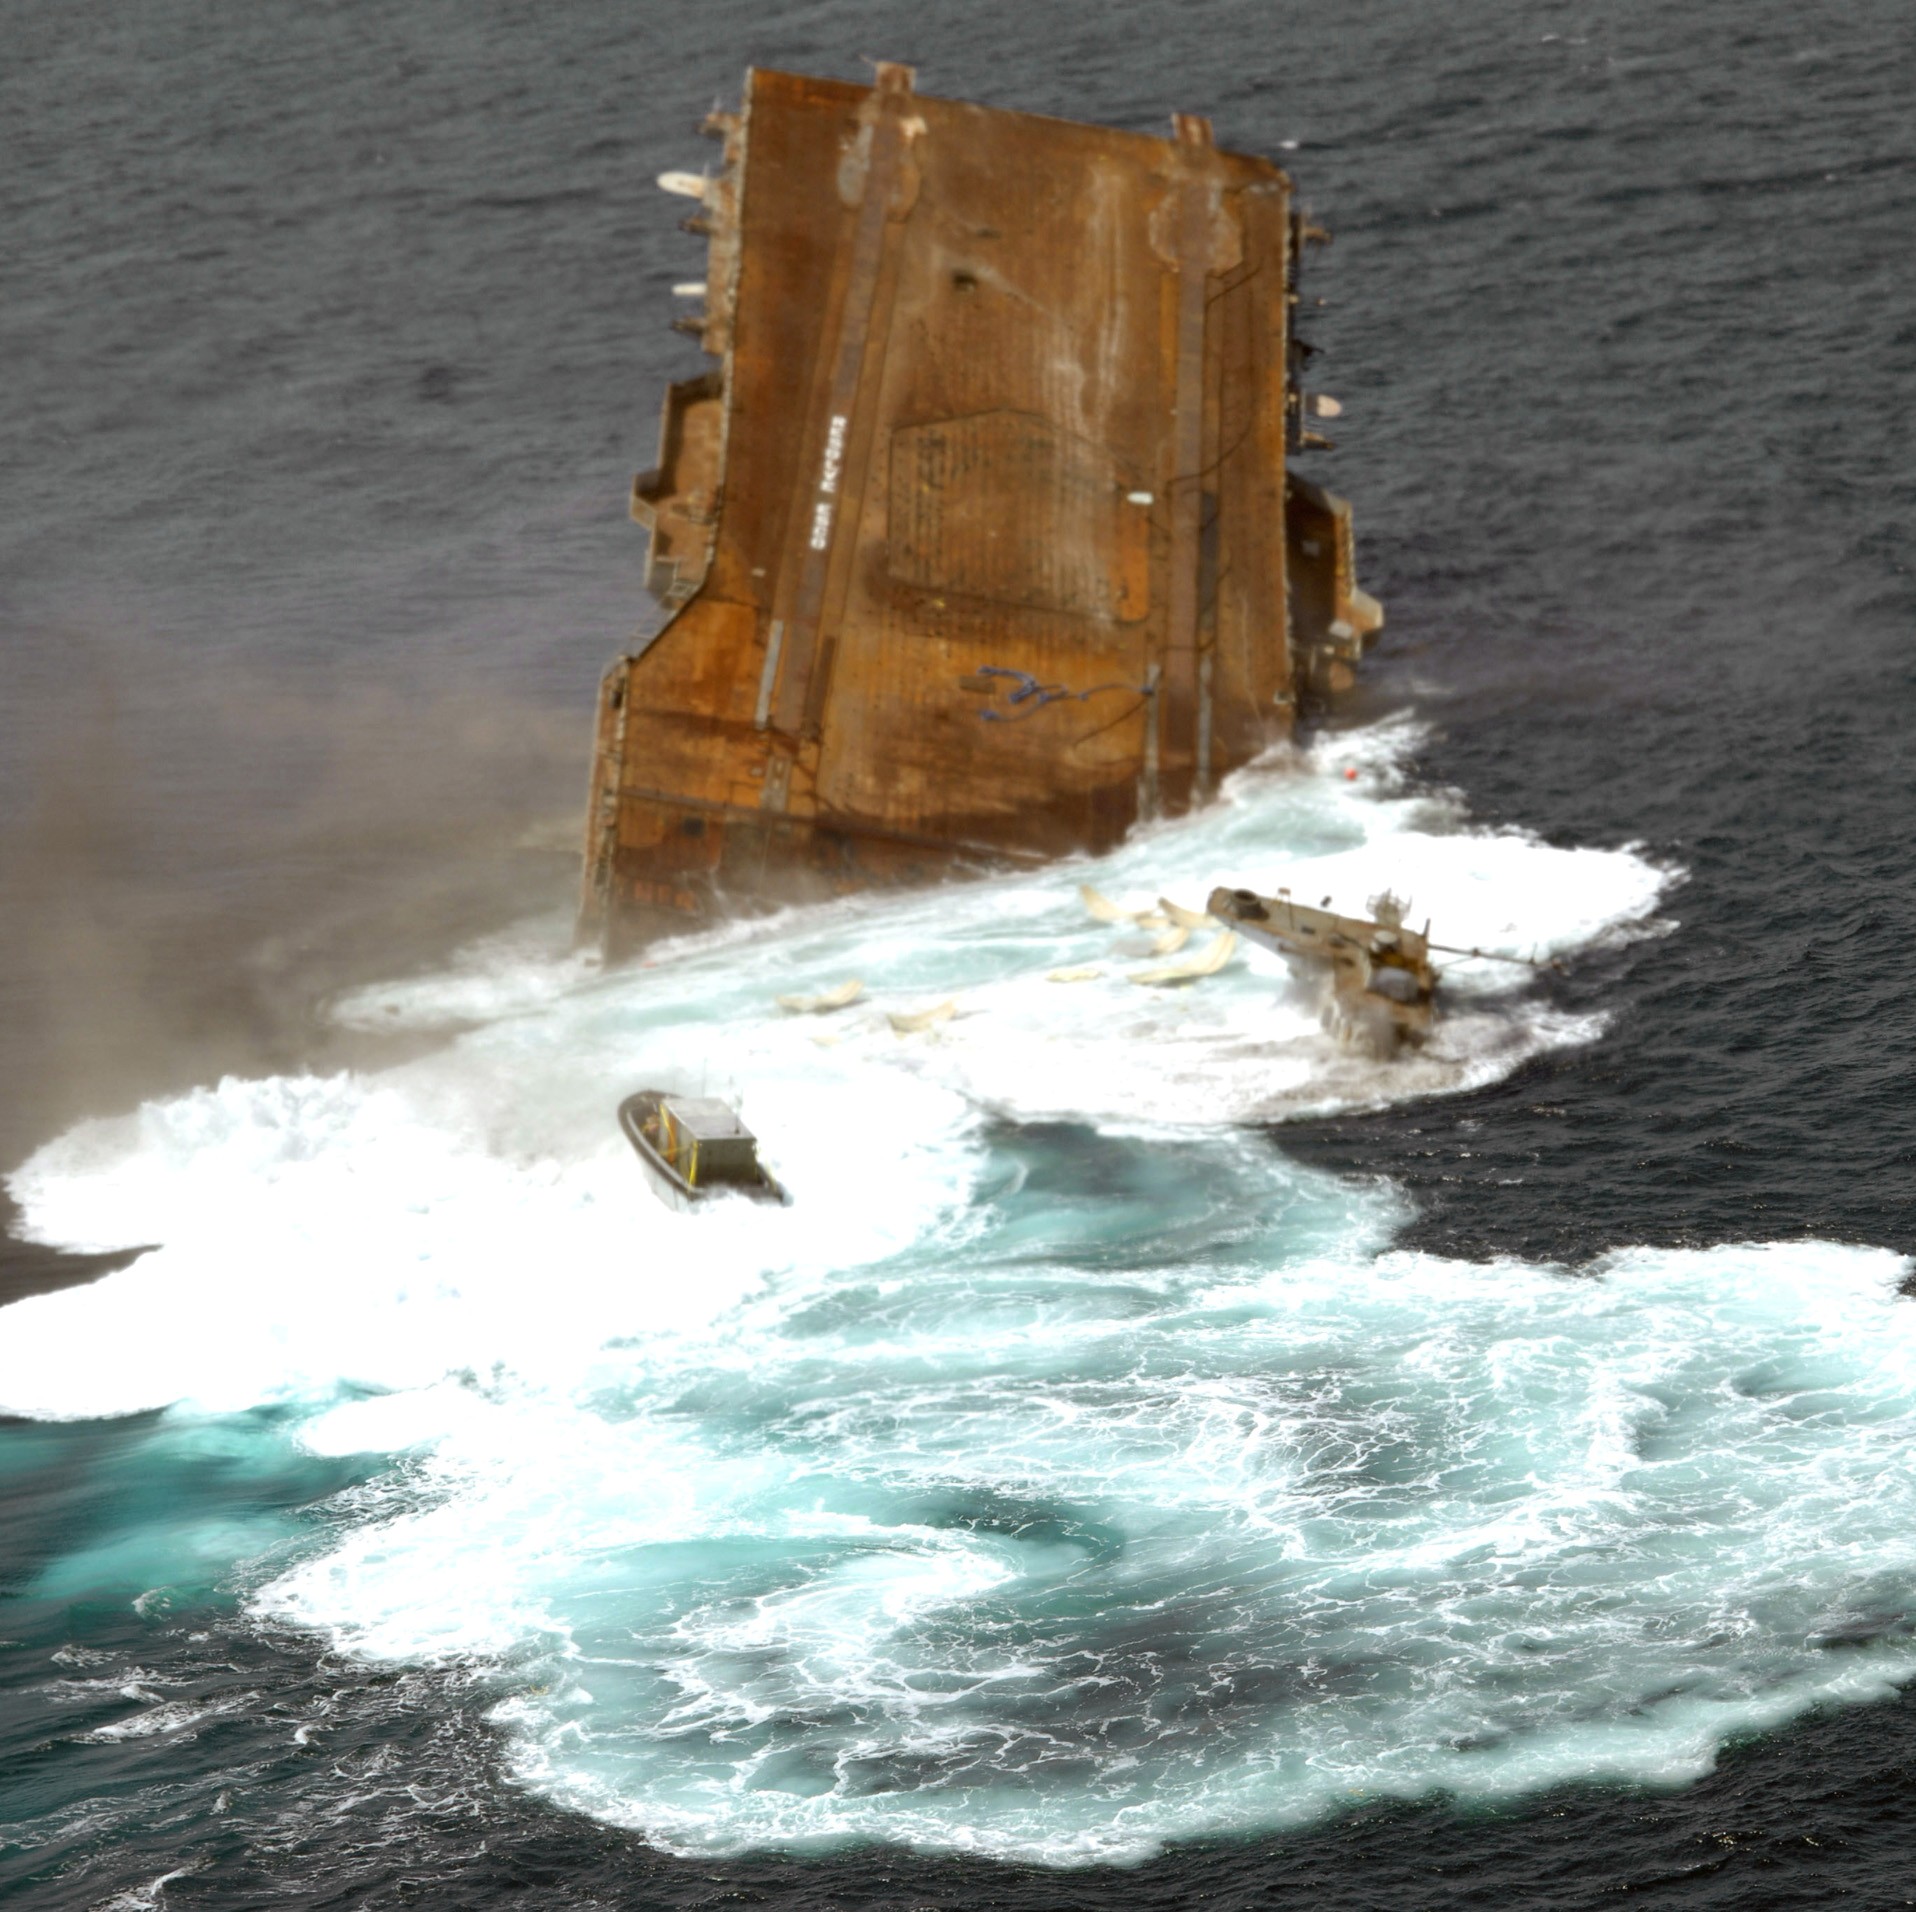 cv-34 uss oriskany essex class aircraft carrier us navy sinking artificial reef off florida 104 scuttled